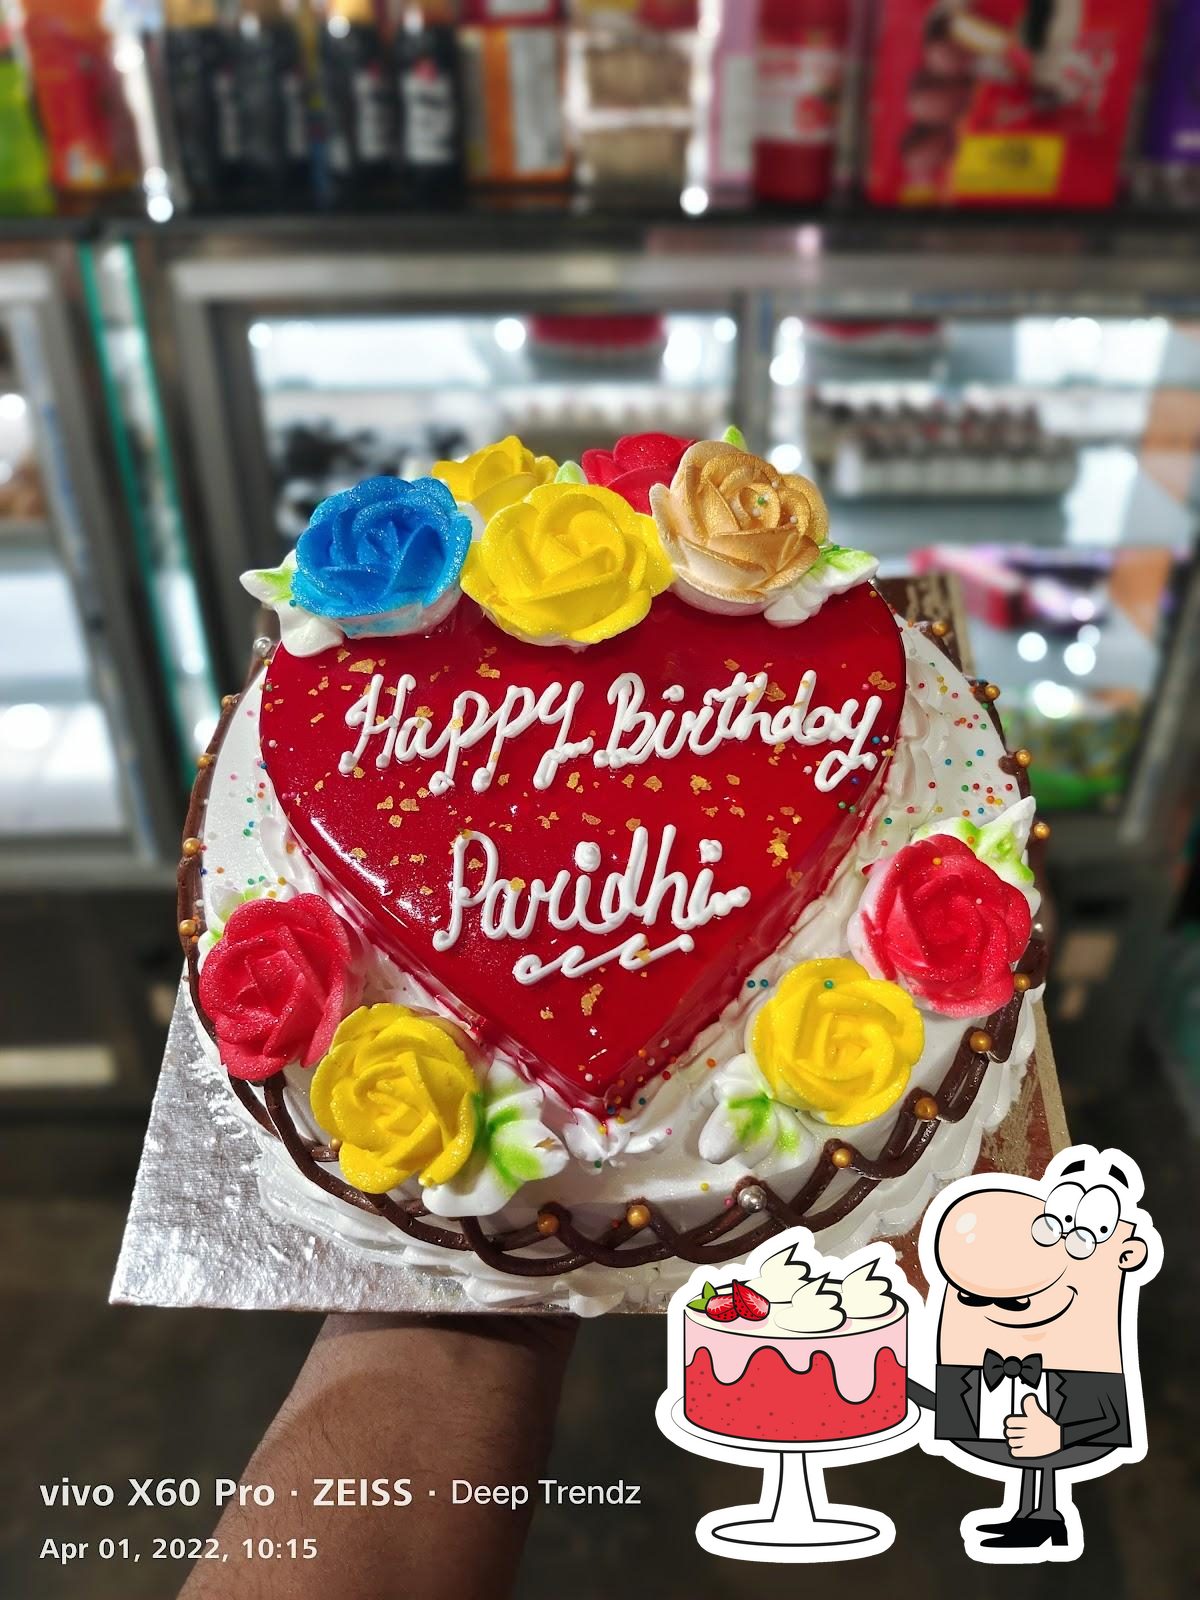 Paridhi Happy Birthday Cakes Pics Gallery